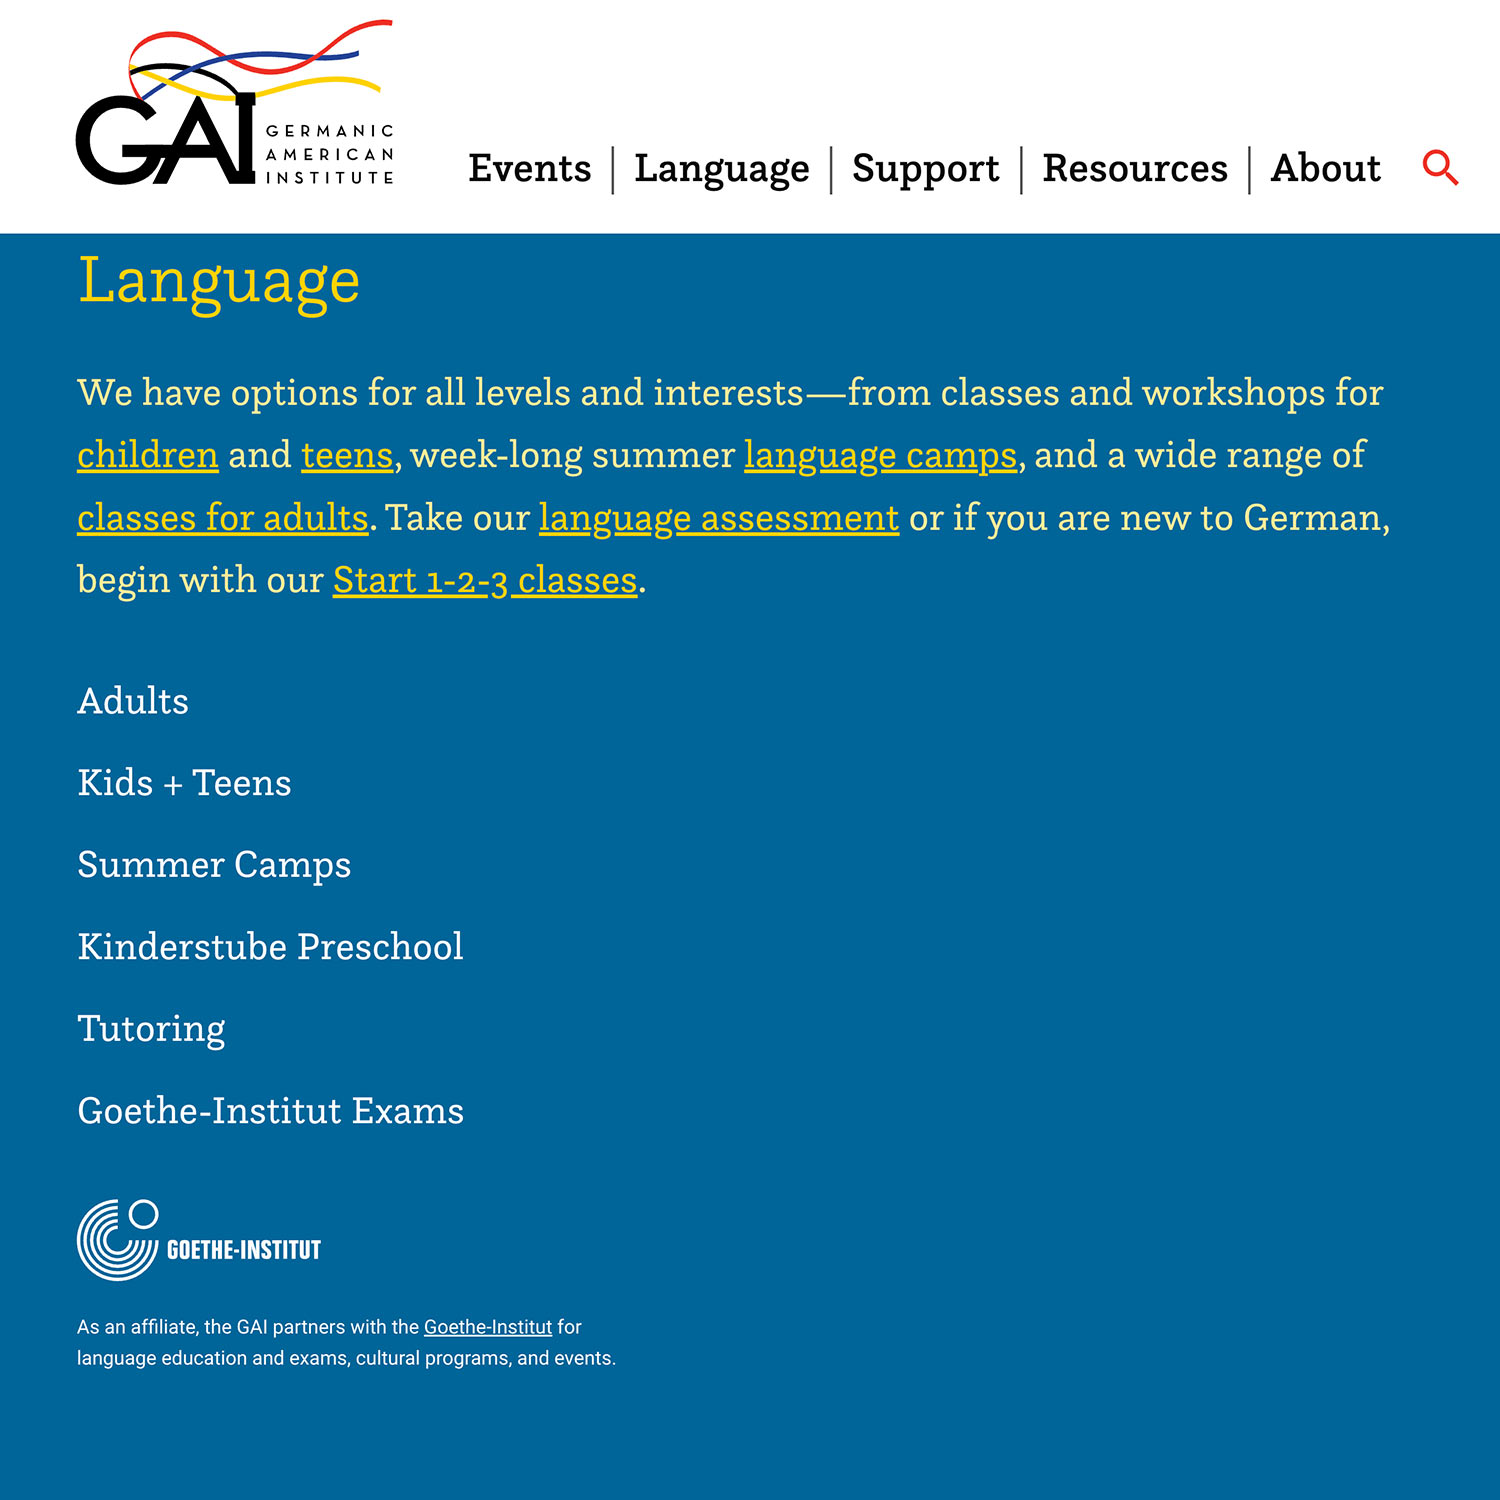 Germanic-American Institute - Language